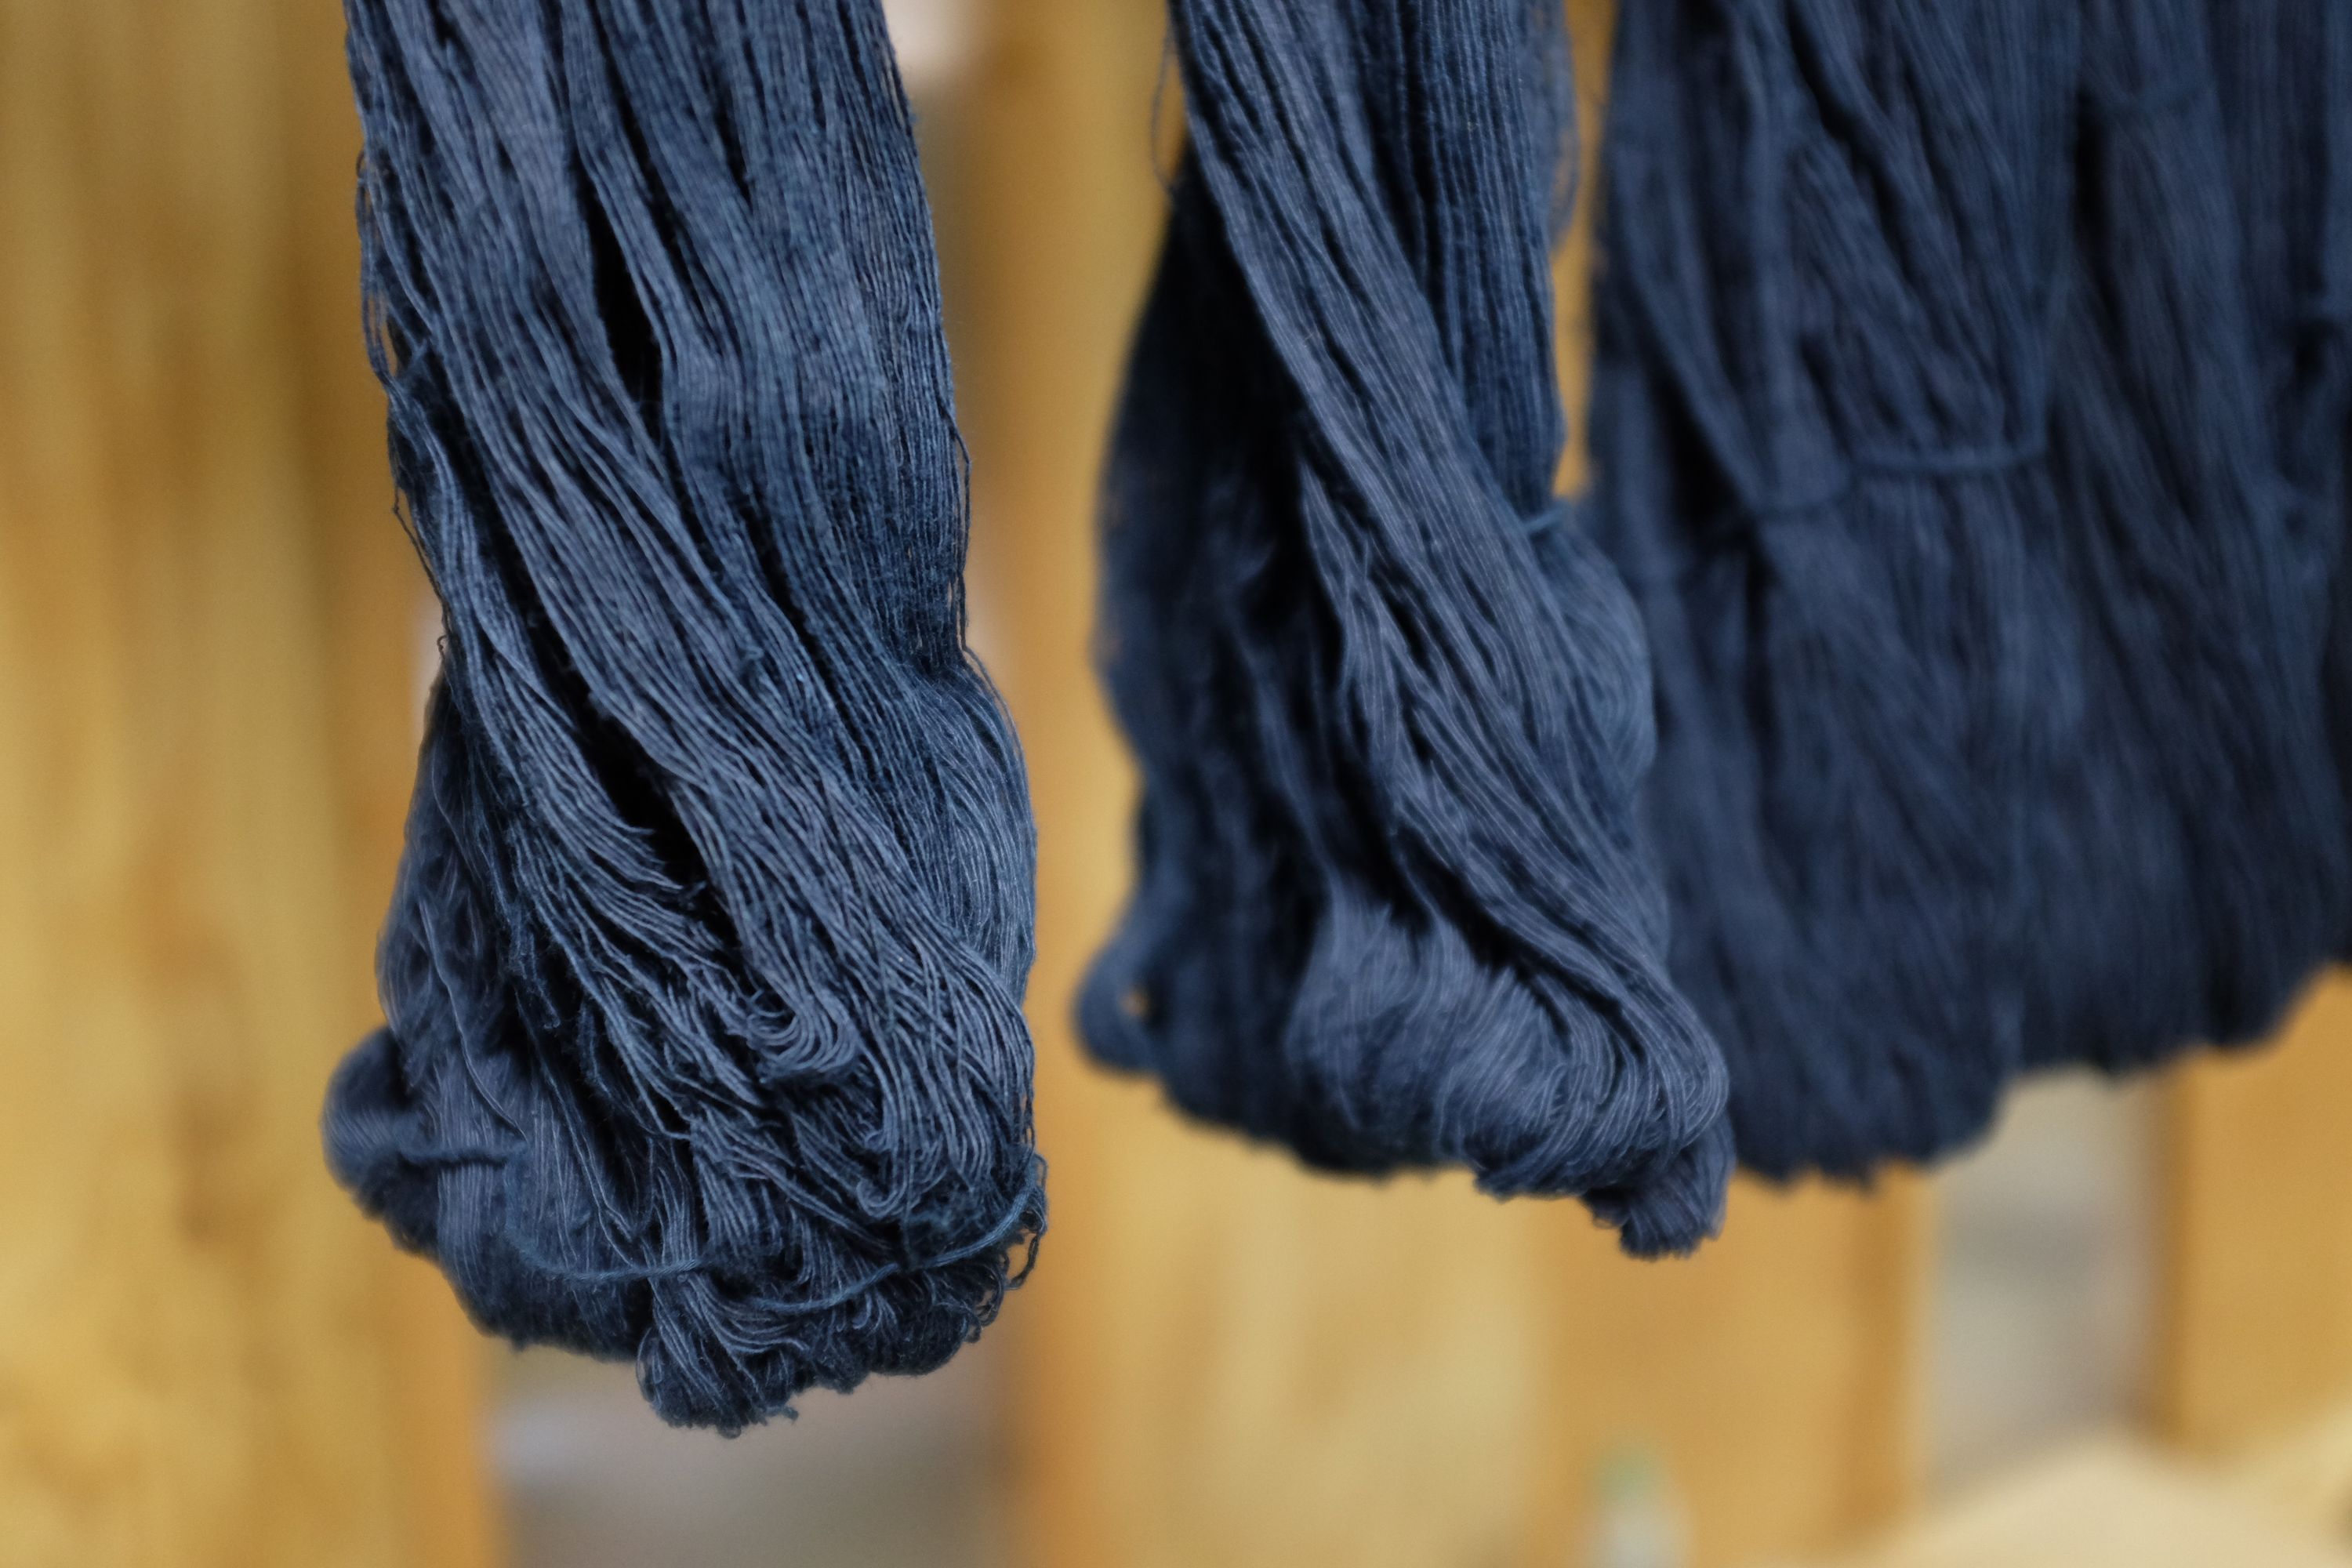 Indigo-dyed yarns of denim thread hang in a row.